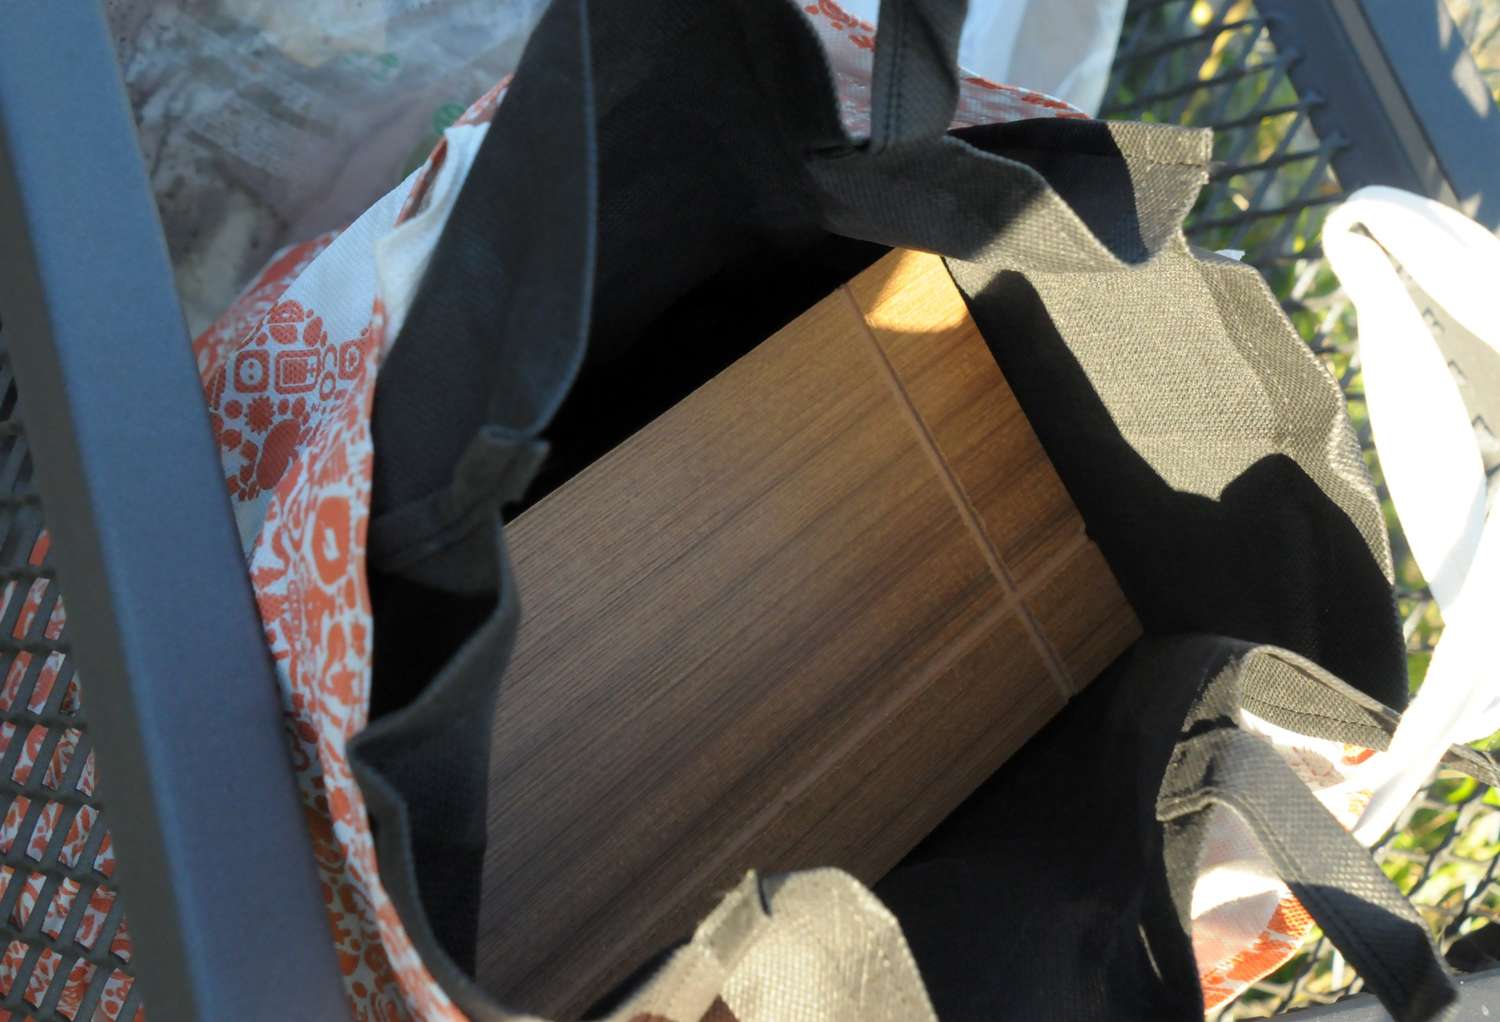 Una vecina denunció que le dejaron una urna funeraria con cenizas en el cesto de basura